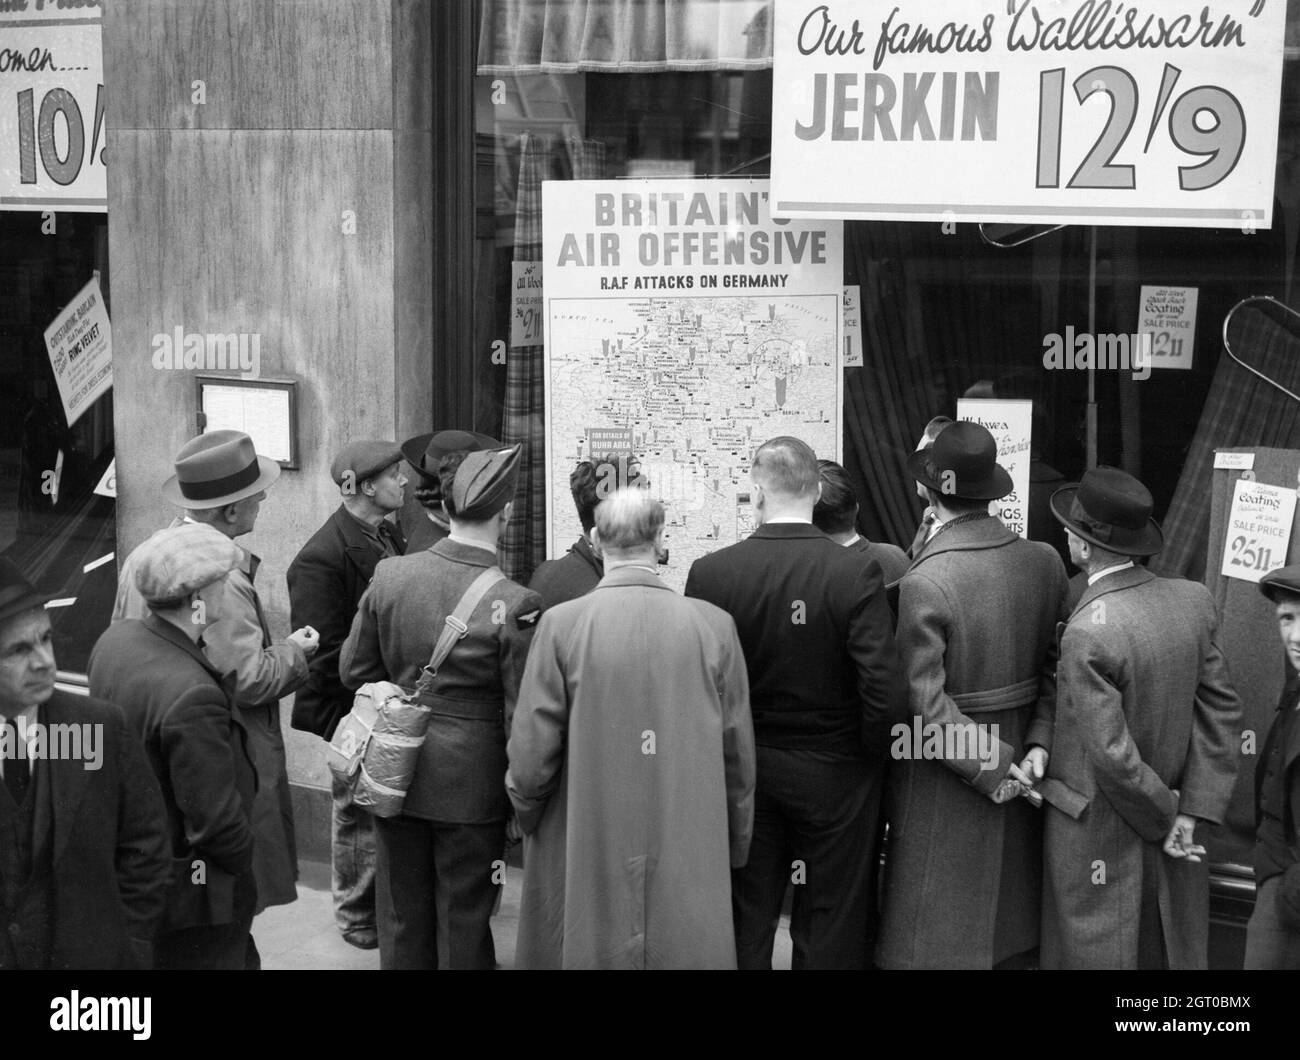 Un aviateur britannique fait partie d'un groupe de civils surpeuplés autour de la fenêtre d'un magasin à Holborn, Londres, pour regarder une carte affichée ici qui est intitulée "l'offensive aérienne de Grande-Bretagne" et montre plus de 700 raids par la Royal Air Force sur l'Allemagne. Banque D'Images